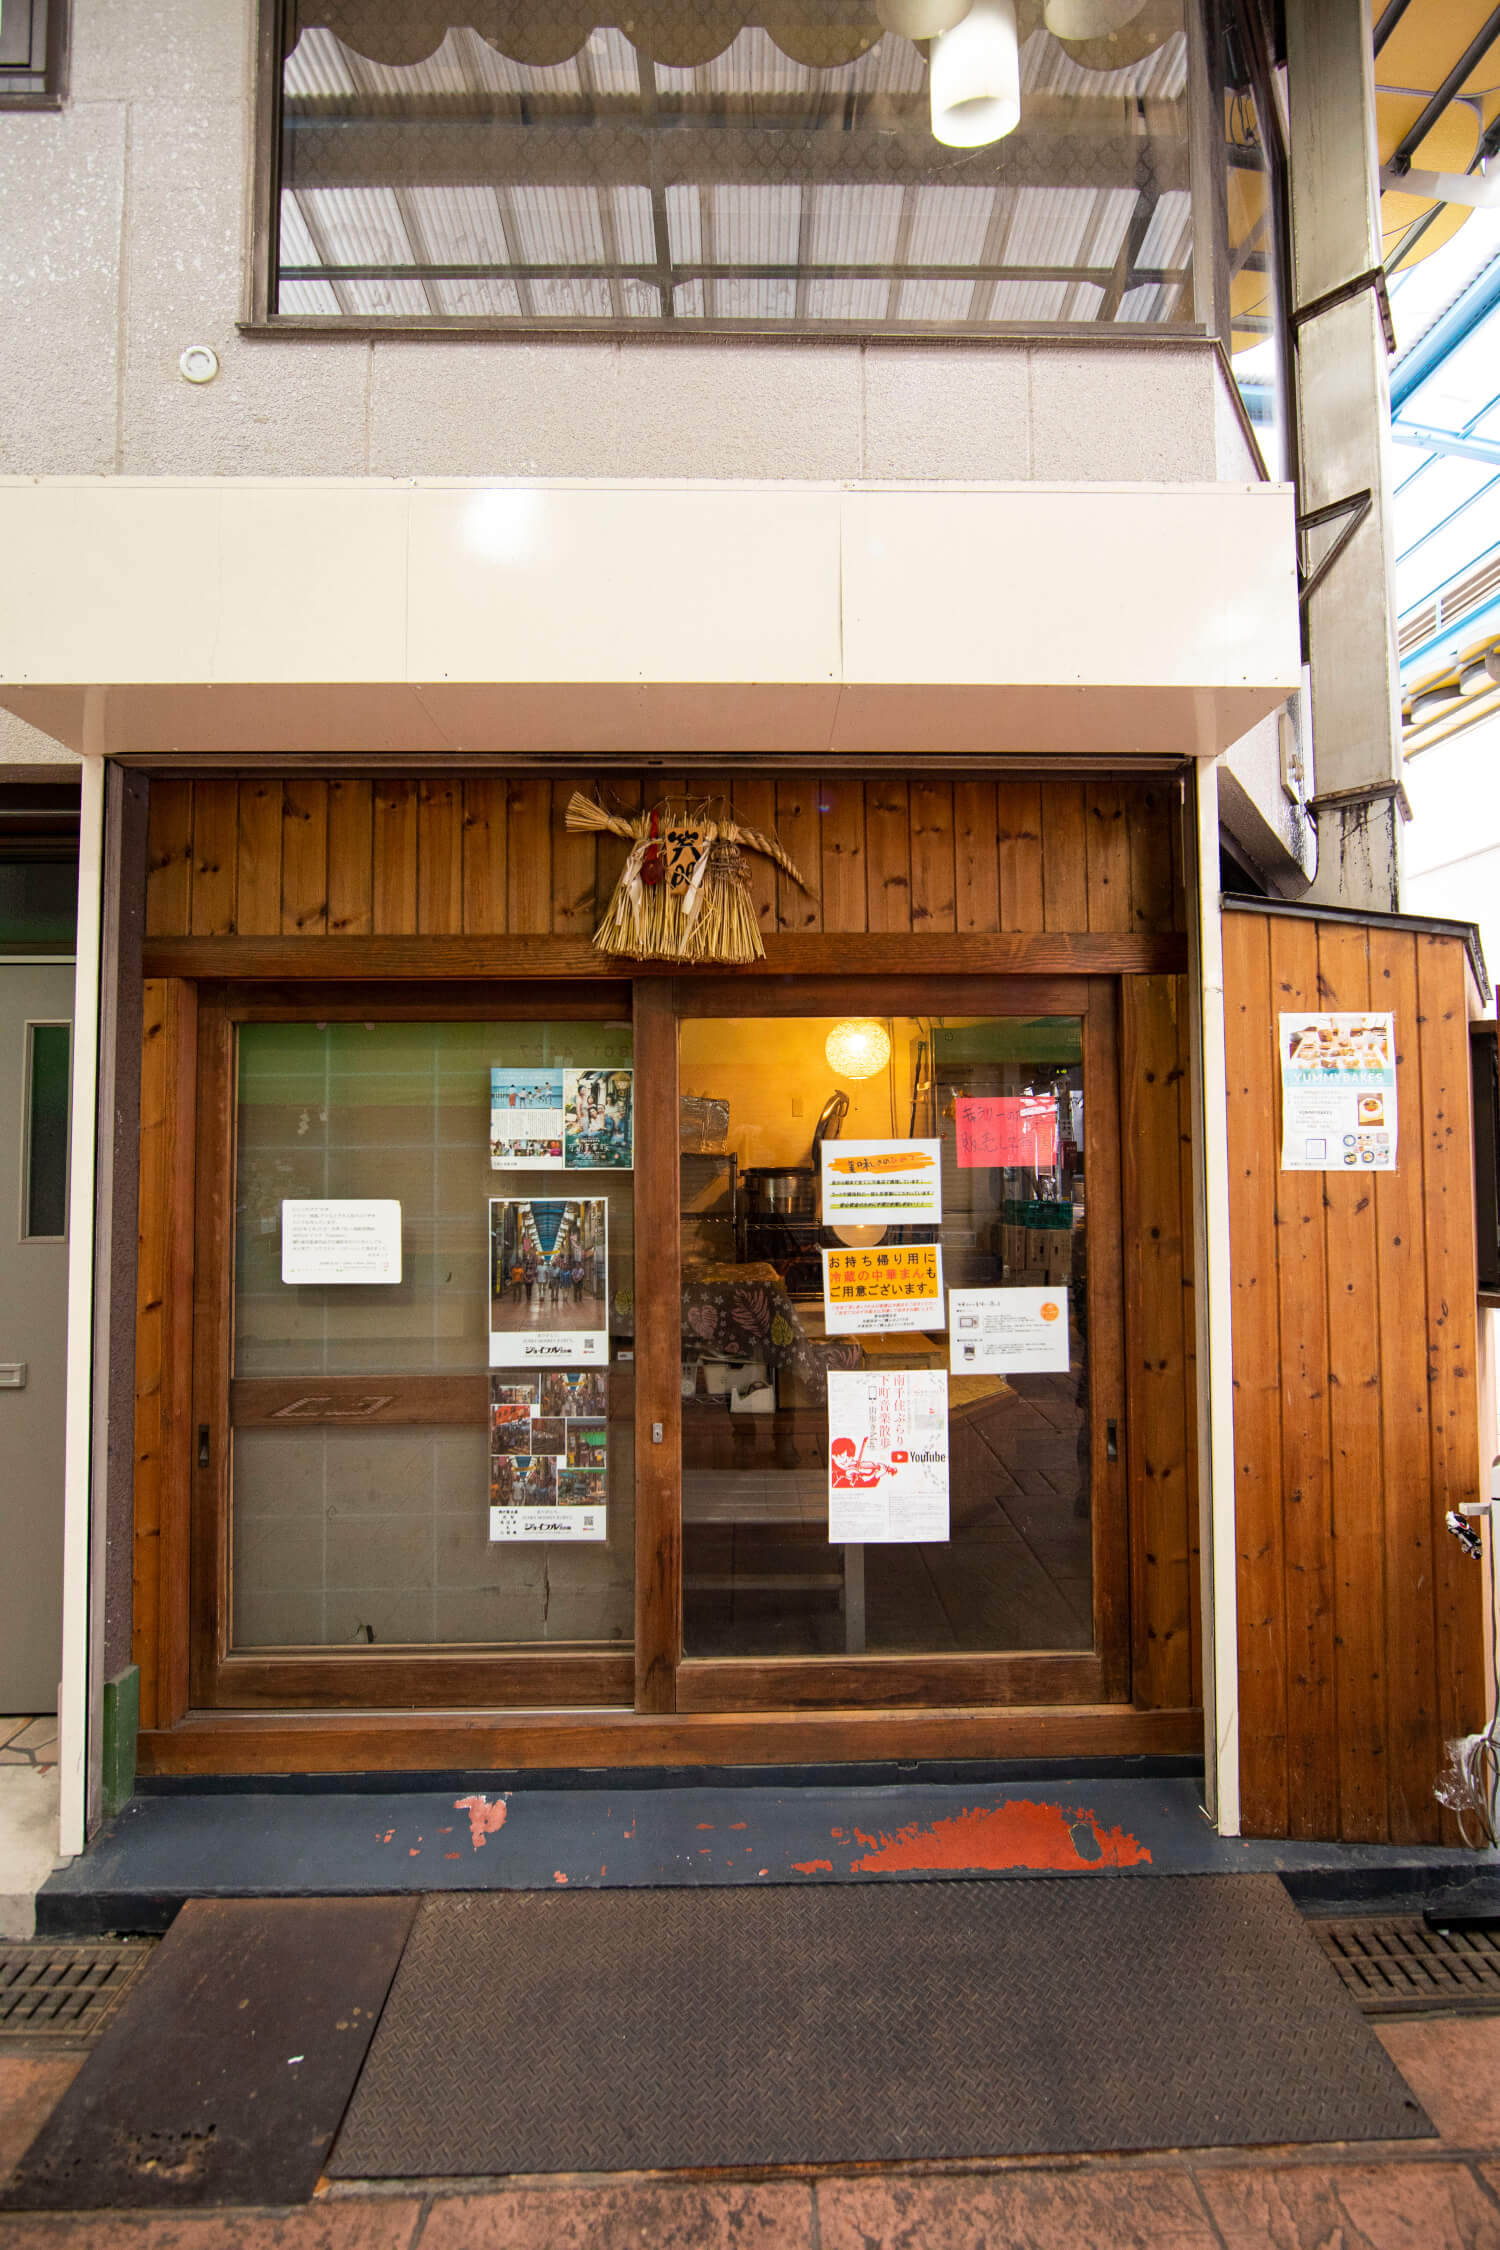 『タカネット』　副理事長 高杉光徳さんの店。焼き肉弁当が自慢のロケ弁専門店。ランチタイムには店頭で、お得な500円弁当や総菜も販売。